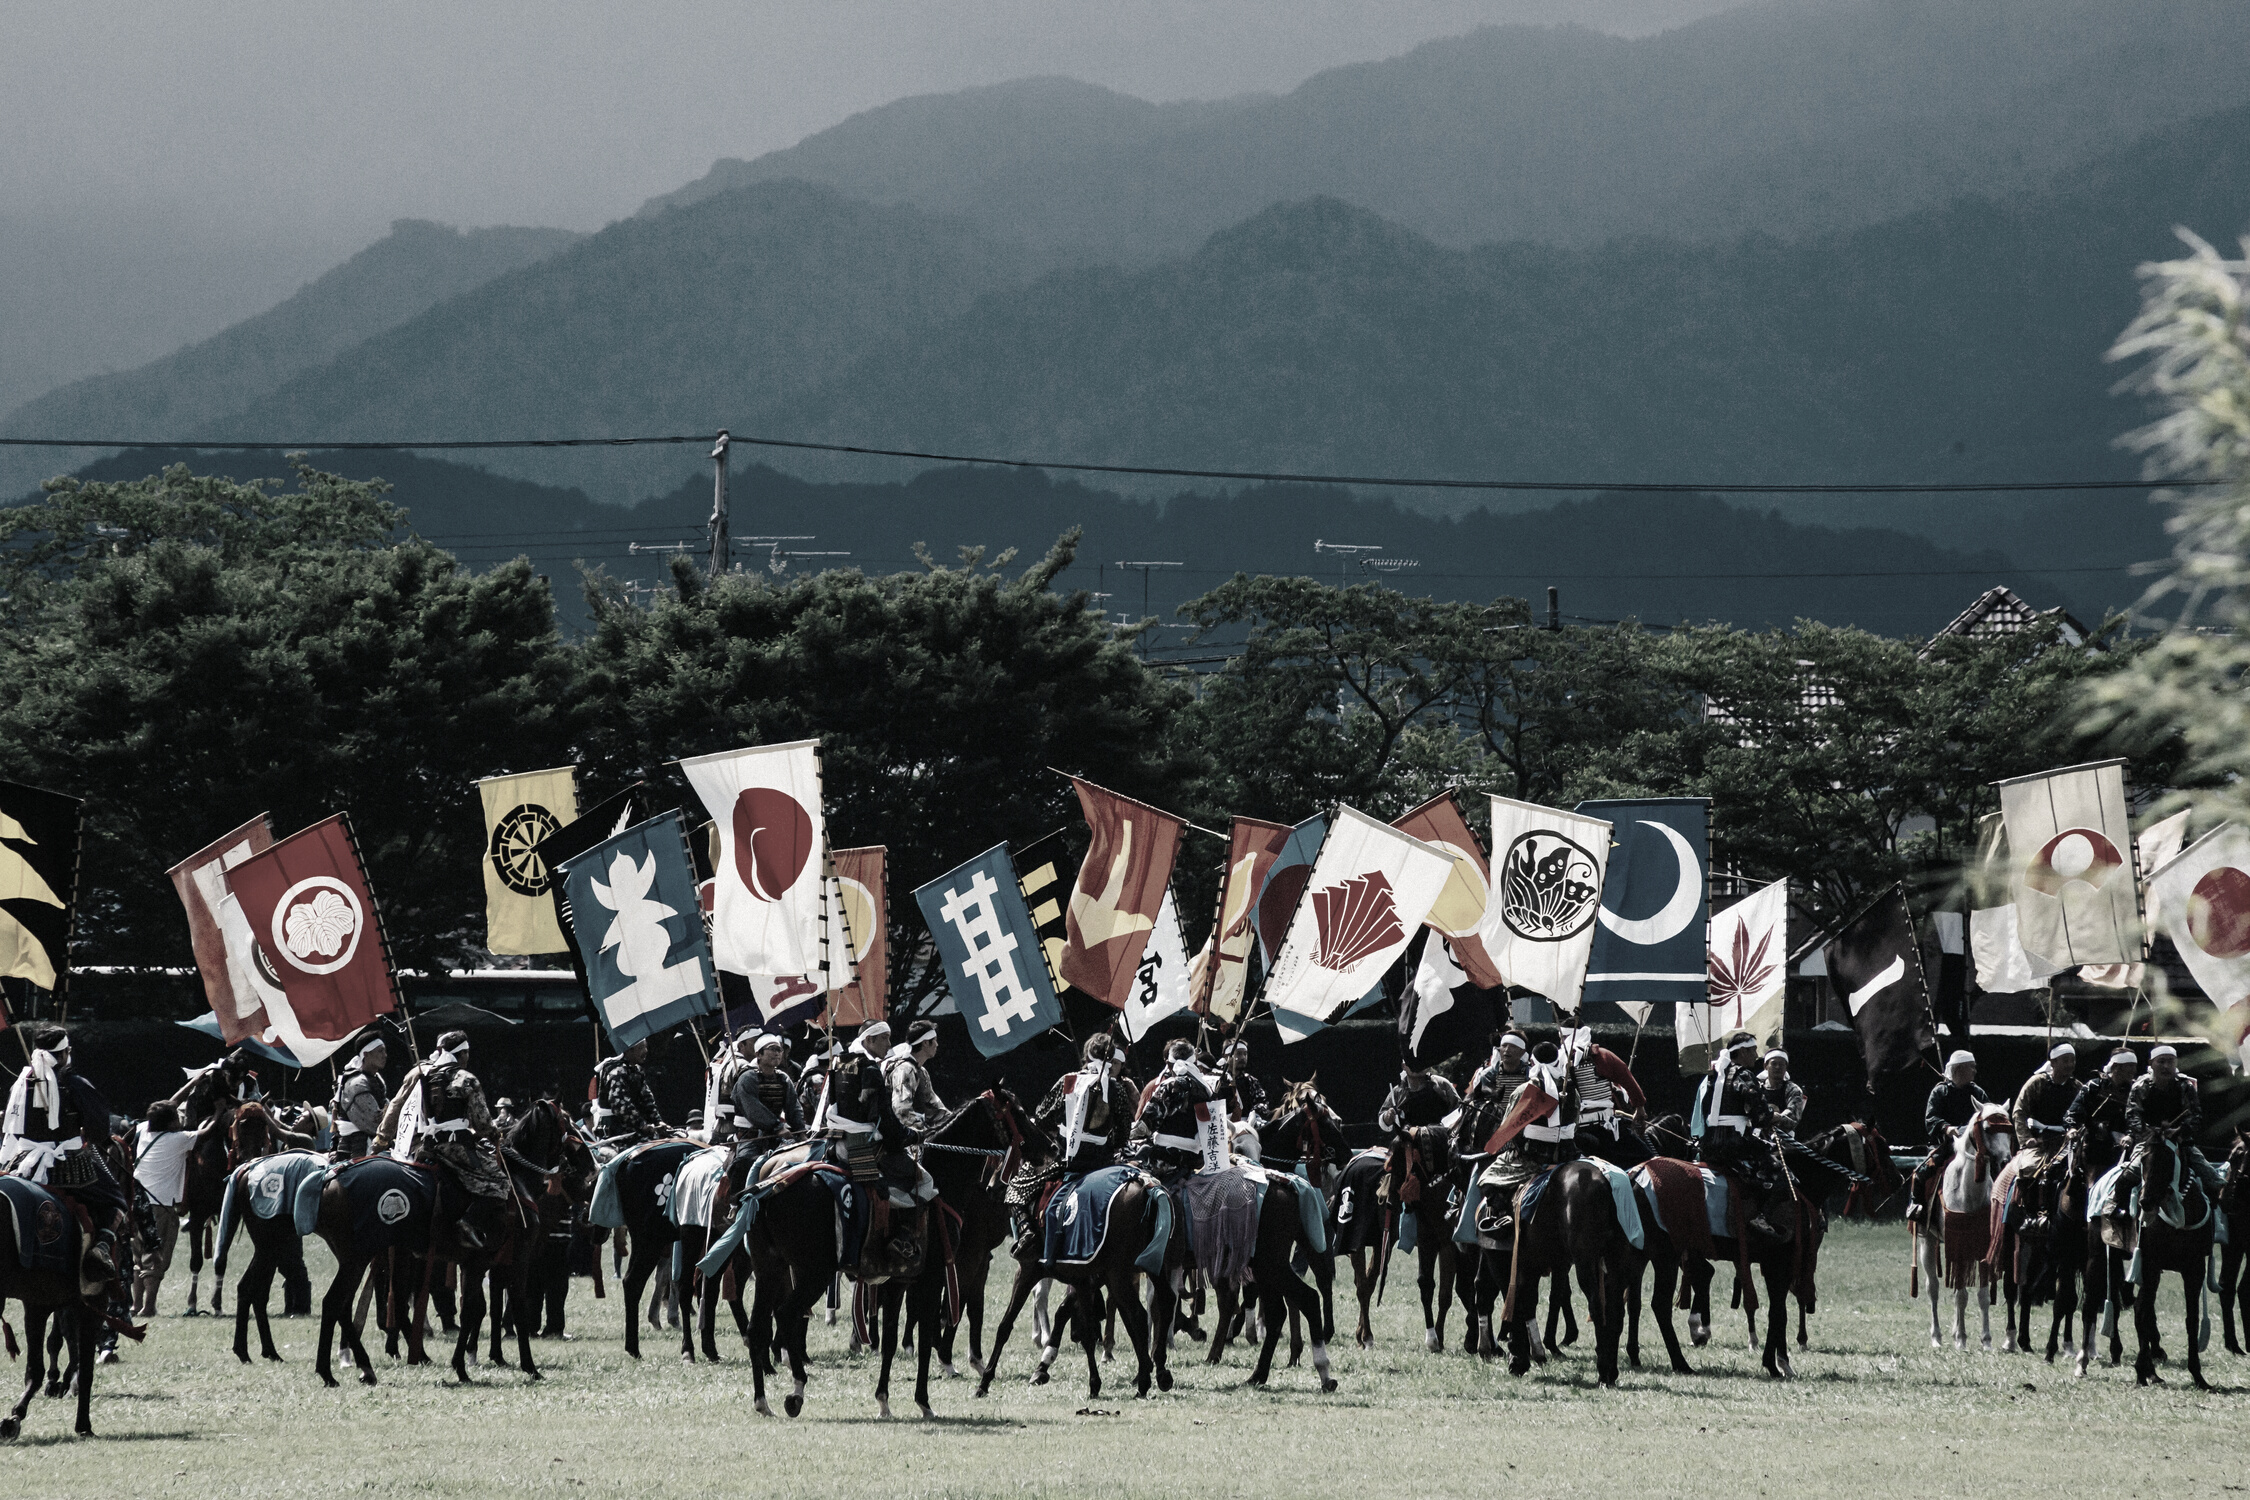 Samurai Ride a Horse and Raising Own Flags